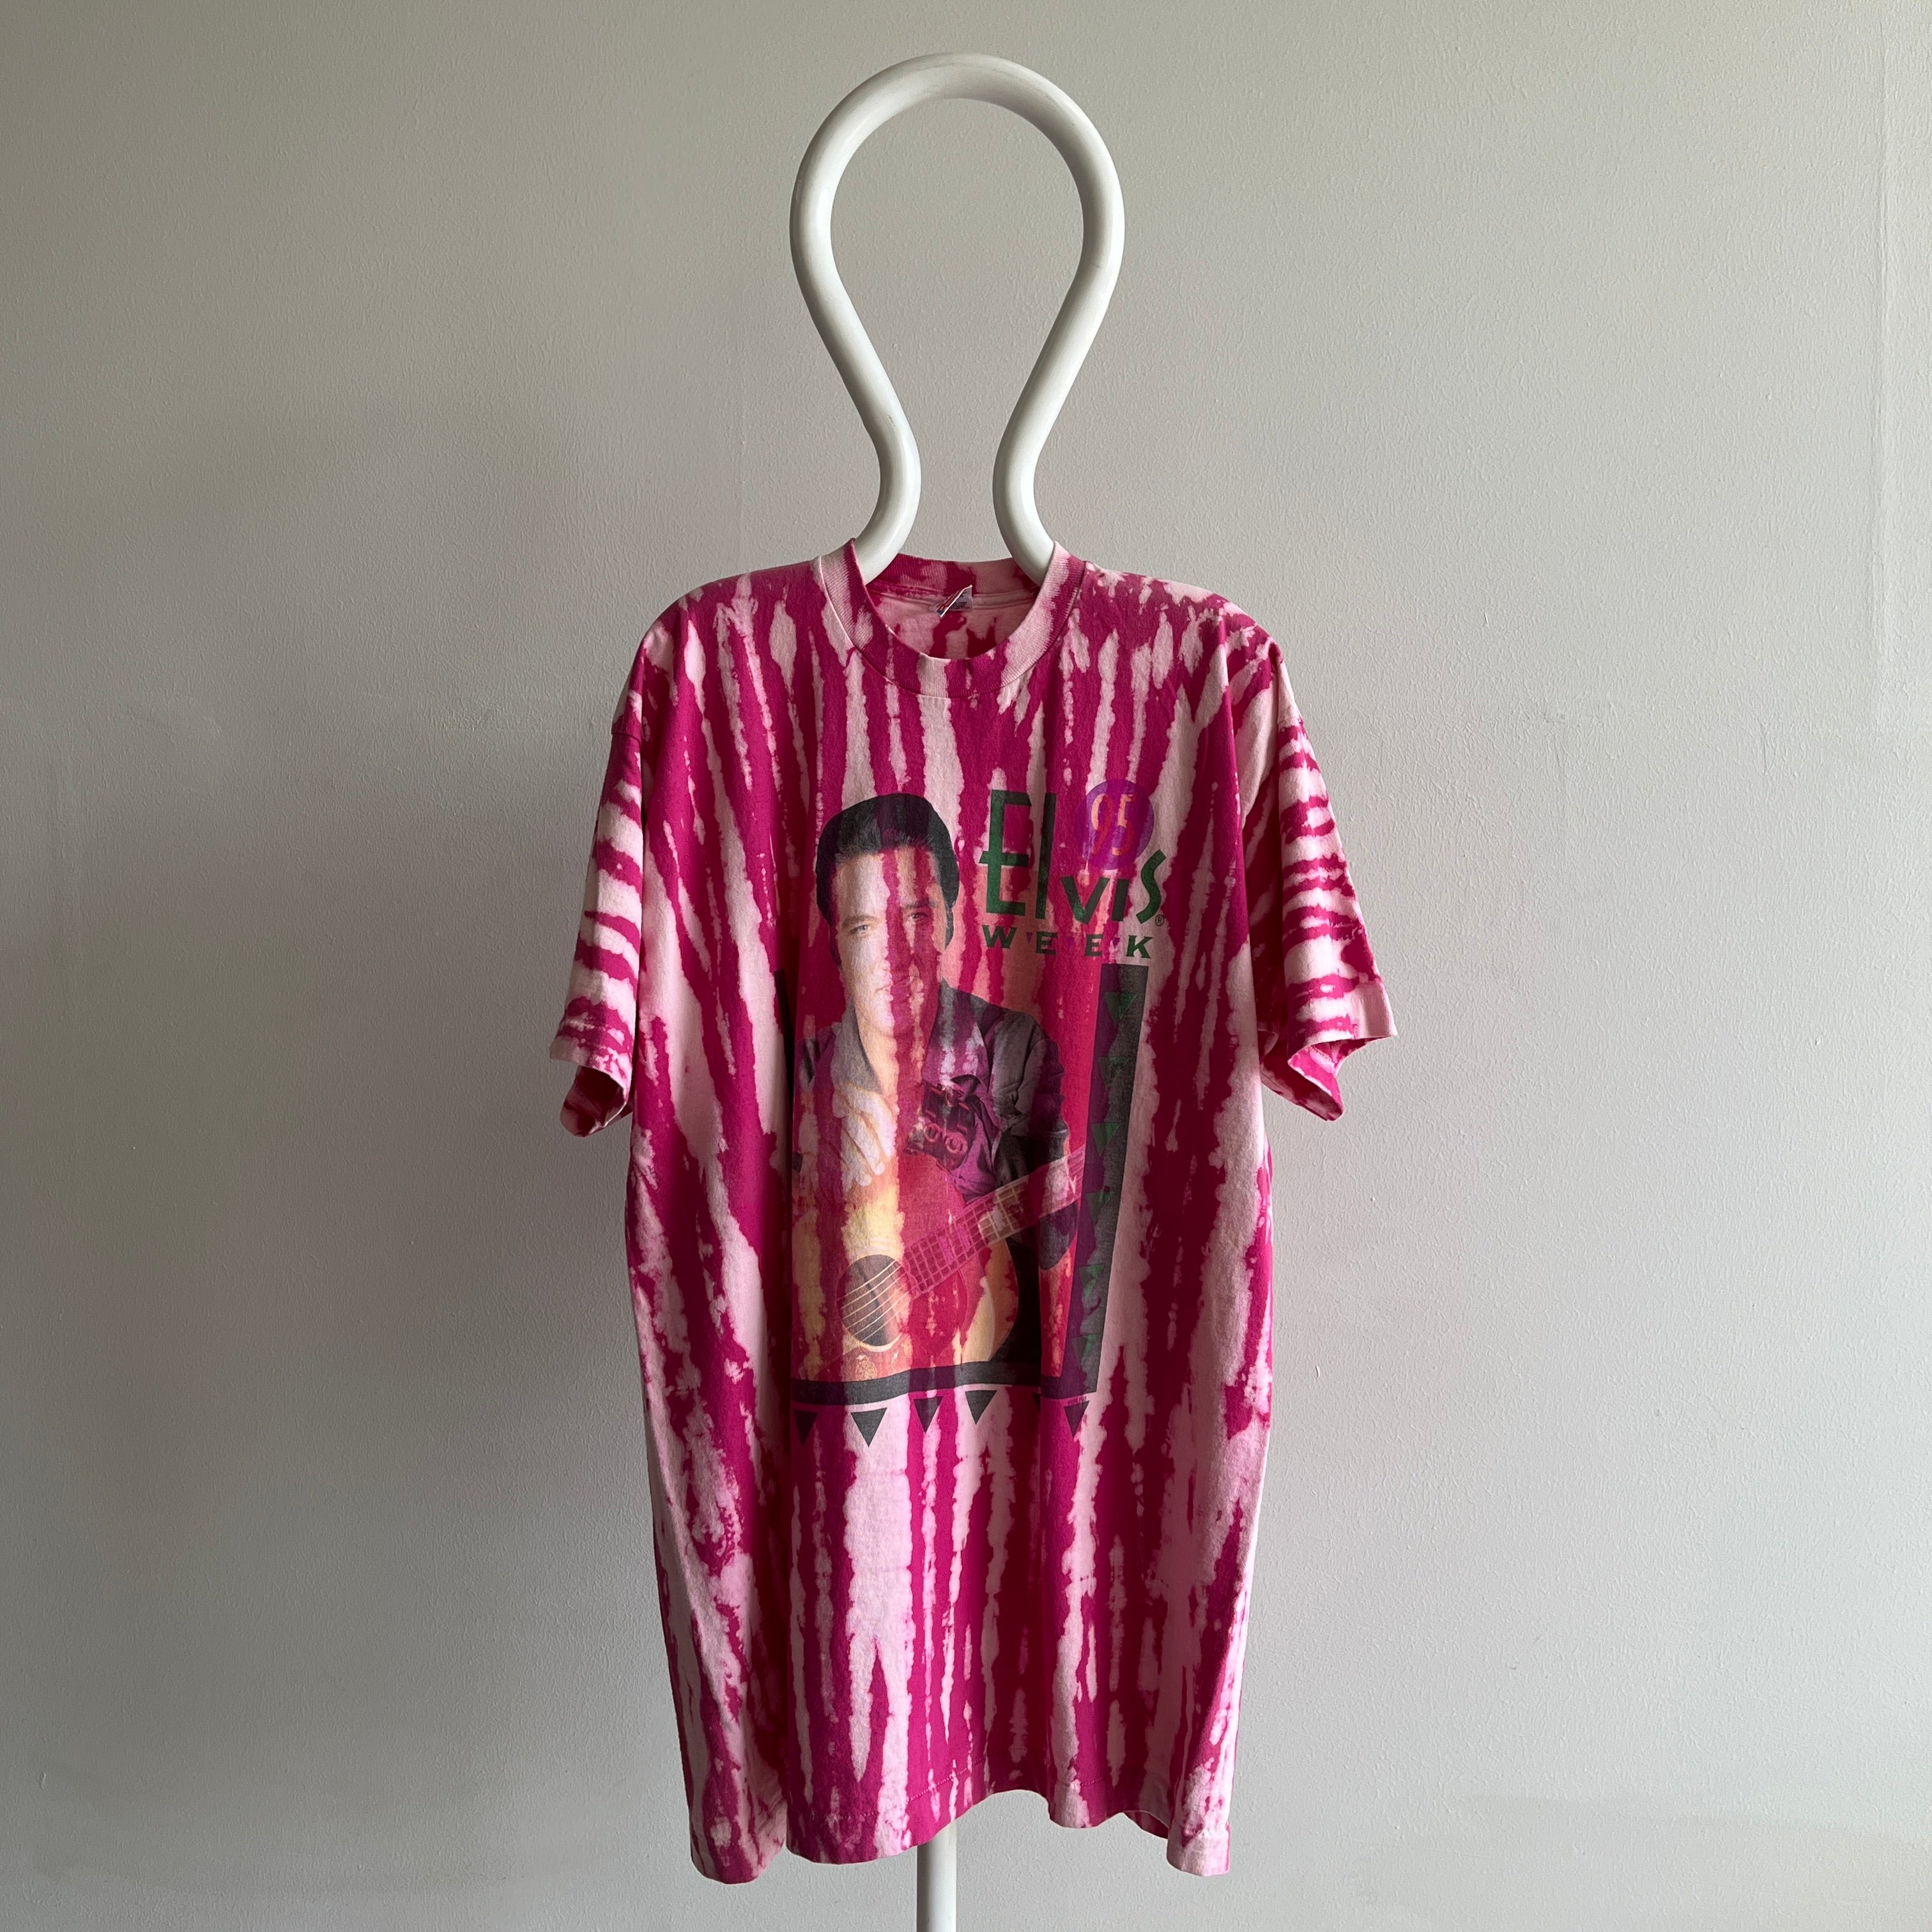 1995 Elvis T-Shirt Dress by FOTL